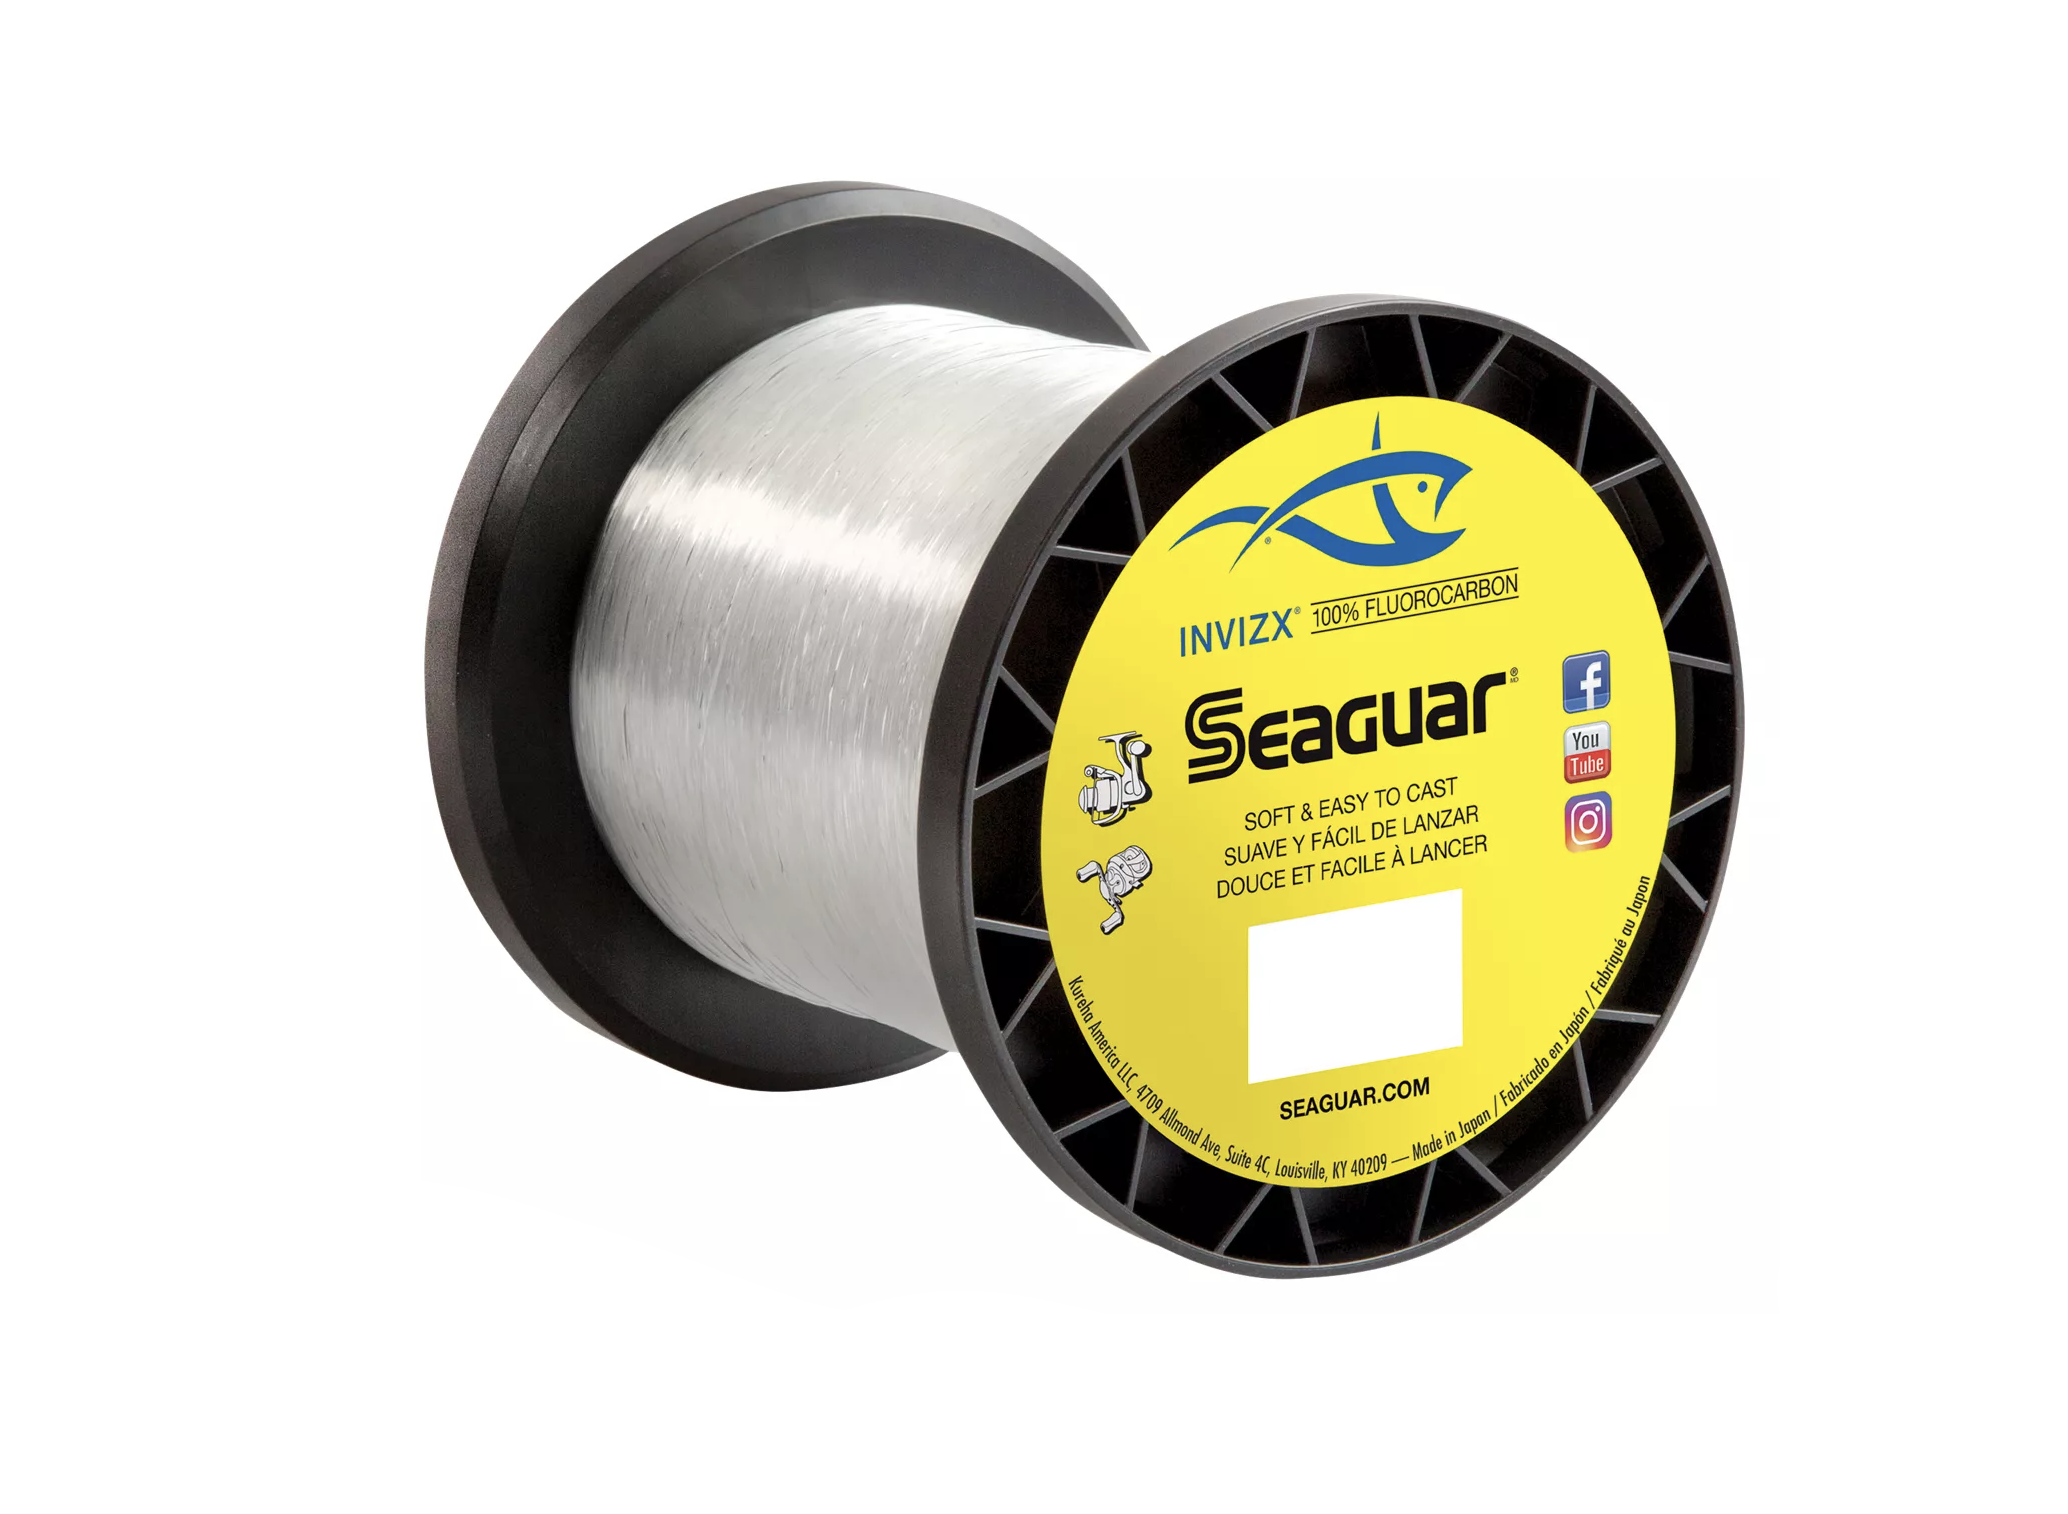 Seaguar INVIZX Fluorocarbon Bulk Spool